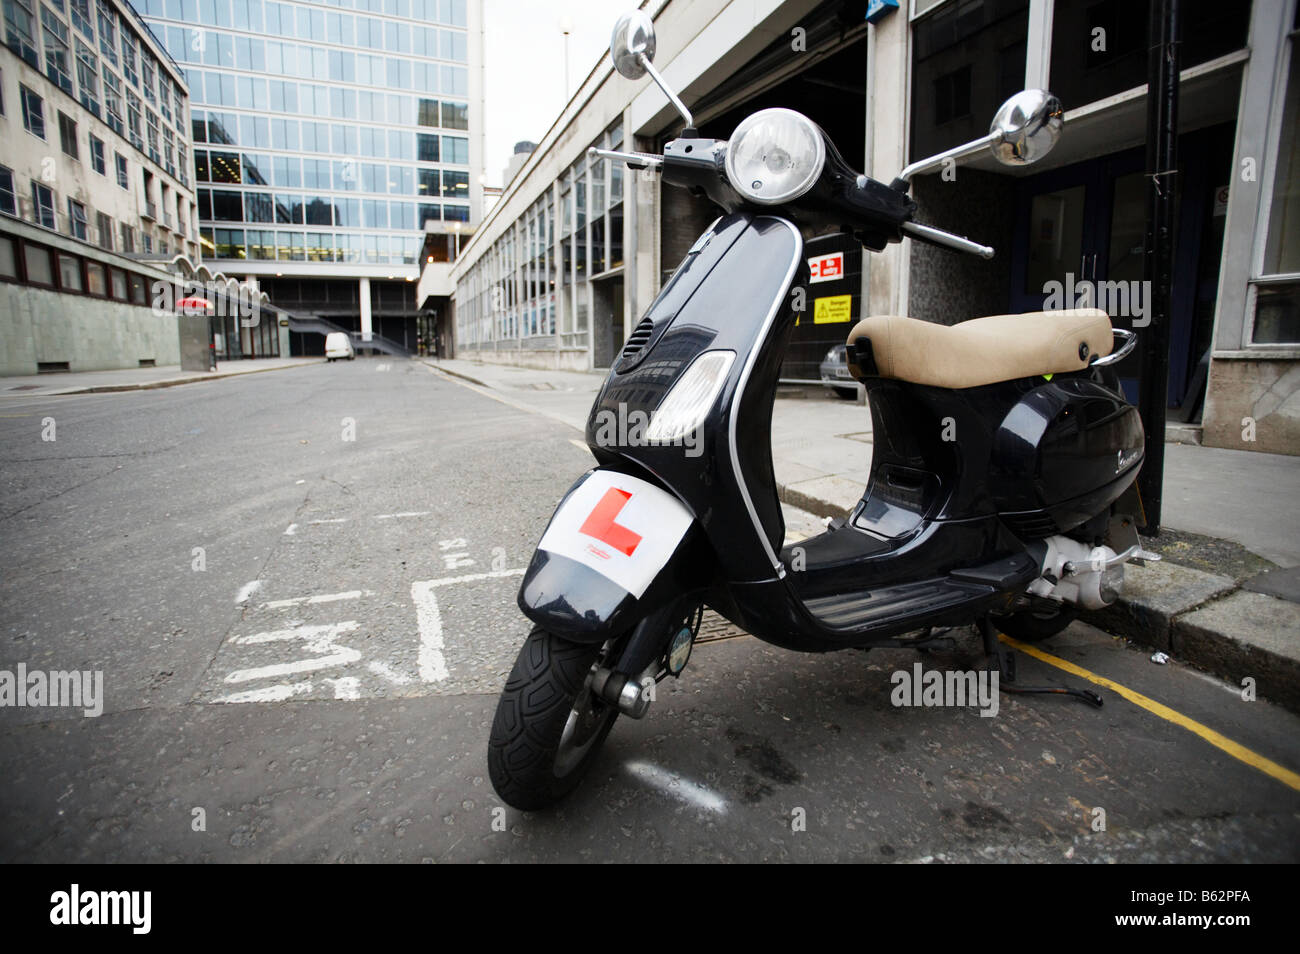 Ciclomotor vespa con L alumno rider placas en Londres England Reino Unido Foto de stock